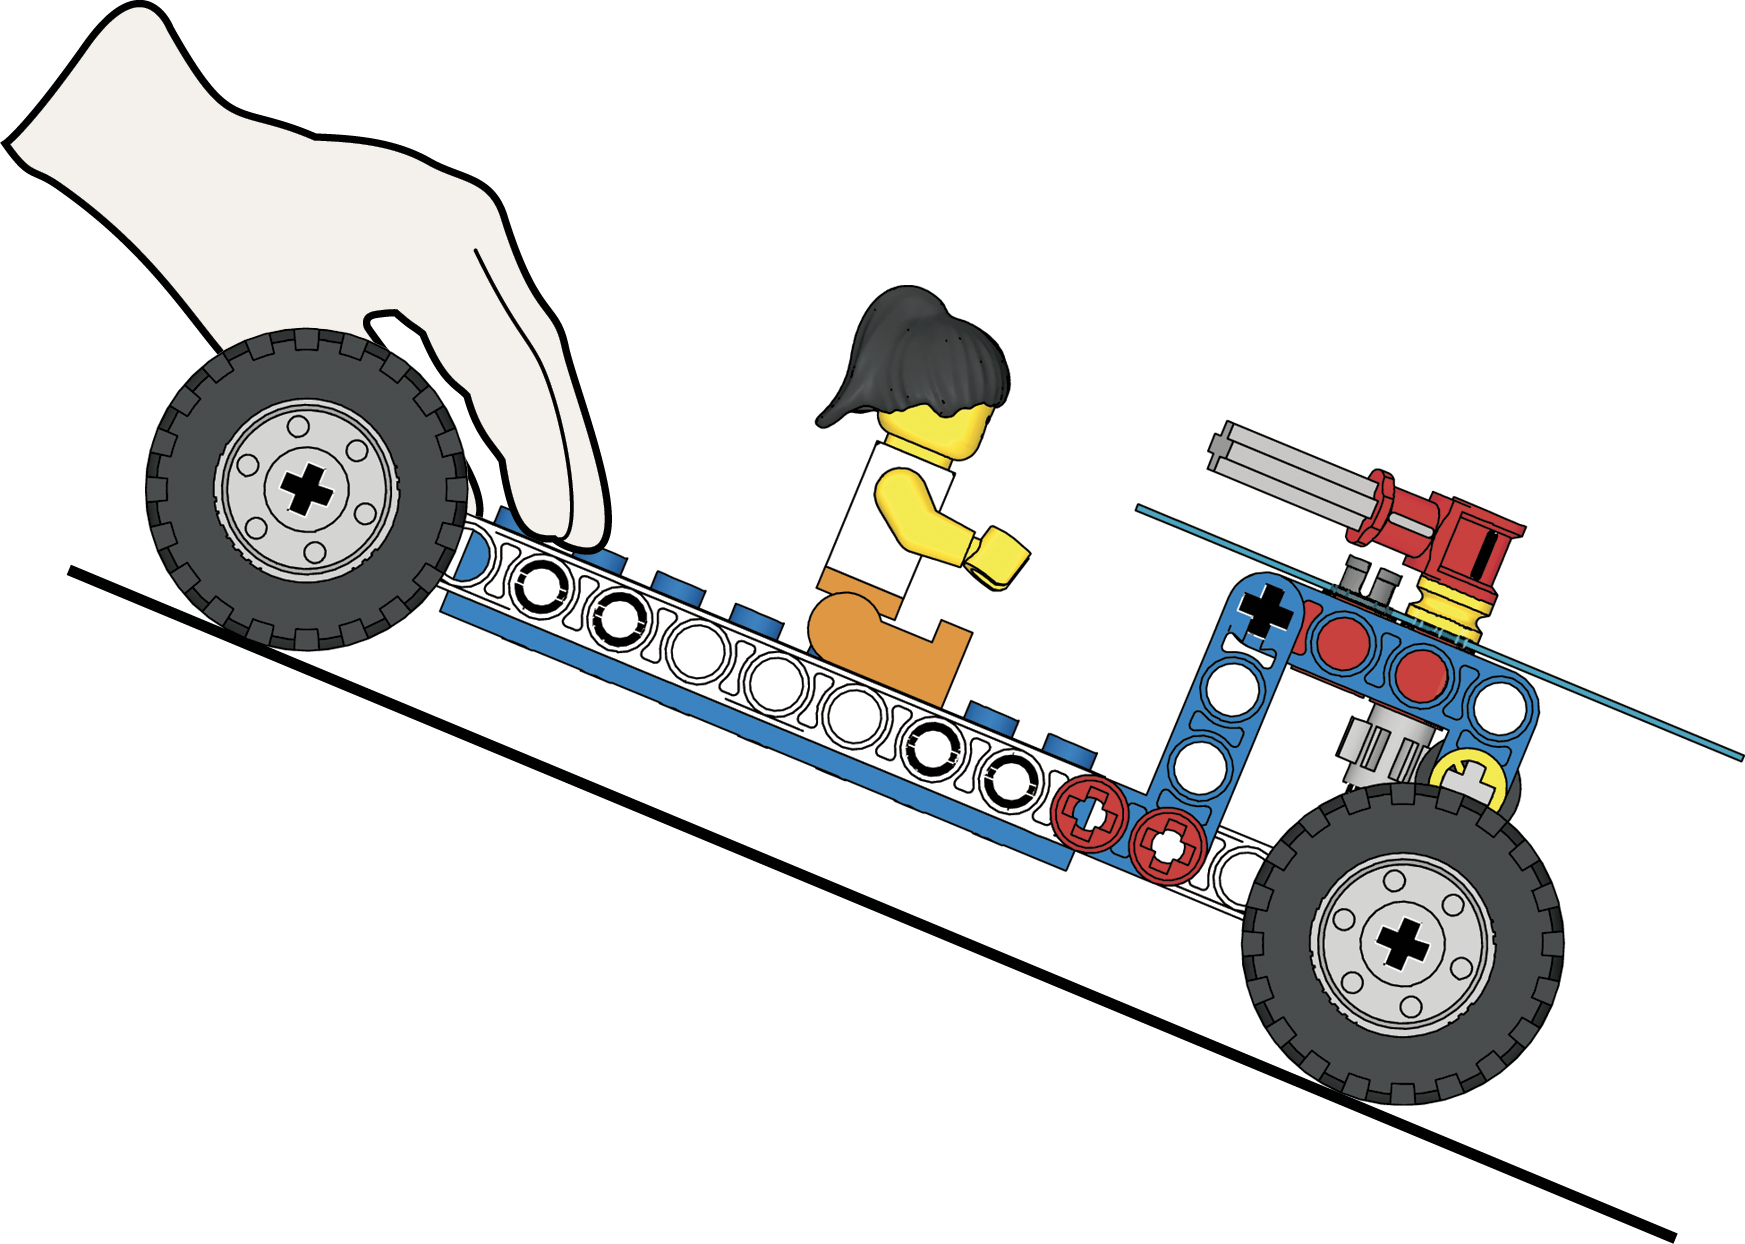 lego education wheels